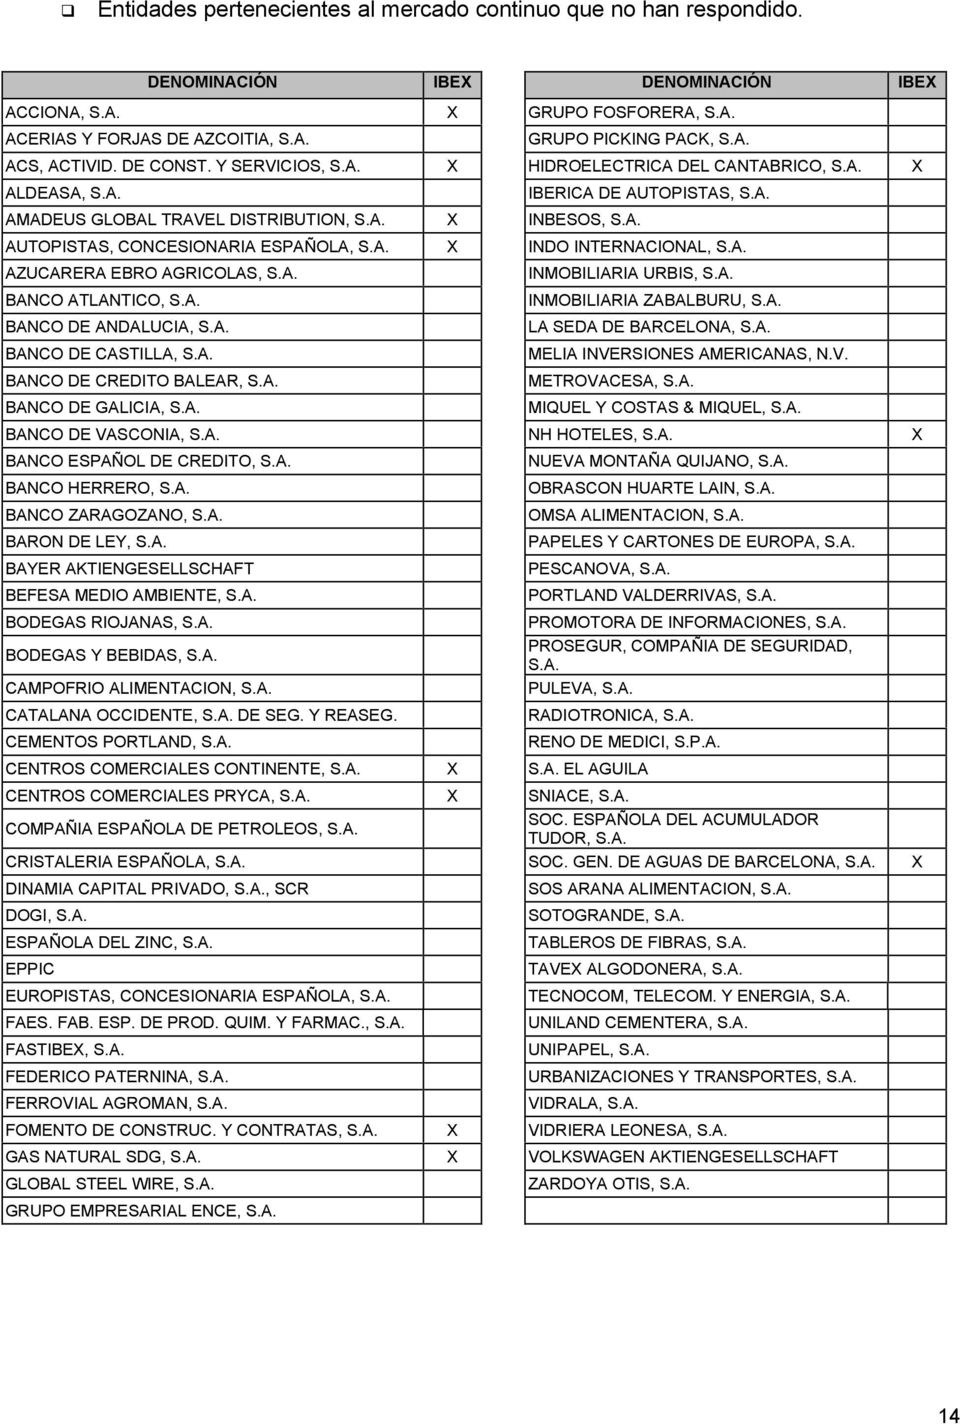 A. X INDO INTERNACIONAL, S.A. AZUCARERA EBRO AGRICOLAS, S.A. BANCO ATLANTICO, S.A. BANCO DE ANDALUCIA, S.A. BANCO DE CASTILLA, S.A. BANCO DE CREDITO BALEAR, S.A. BANCO DE GALICIA, S.A. INMOBILIARIA URBIS, S.